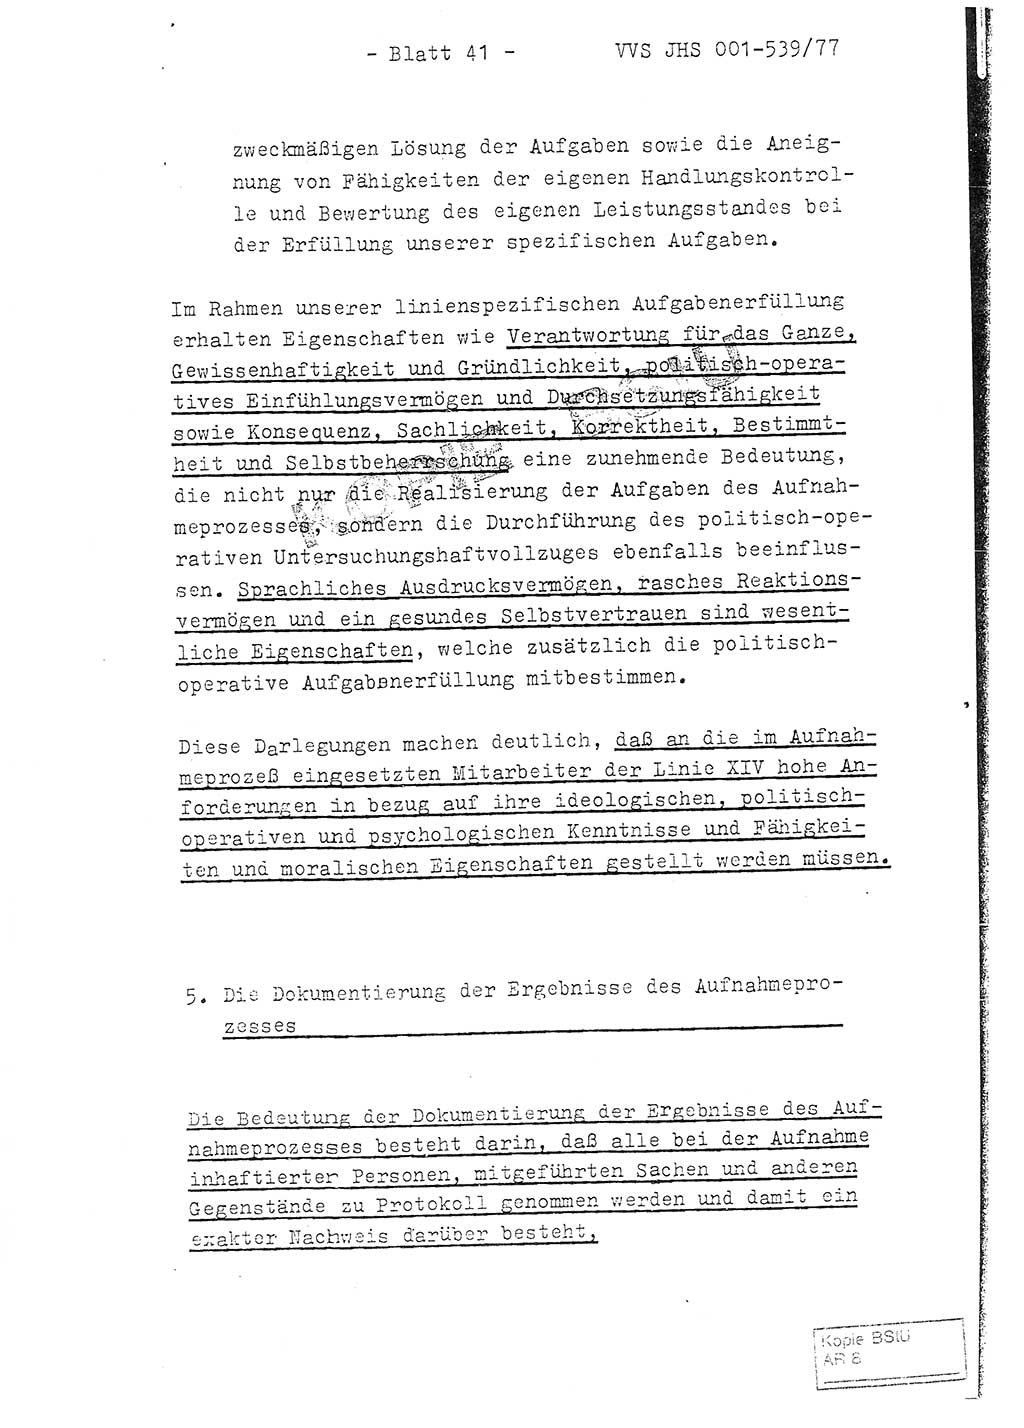 Fachschulabschlußarbeit Hauptmann Dietrich Jung (Abt. ⅩⅣ), Leutnant Klaus Klötzner (Abt. ⅩⅣ), Ministerium für Staatssicherheit (MfS) [Deutsche Demokratische Republik (DDR)], Juristische Hochschule (JHS), Vertrauliche Verschlußsache (VVS) 001-539/77, Potsdam 1978, Seite 41 (FS-Abschl.-Arb. MfS DDR JHS VVS 001-539/77 1978, S. 41)